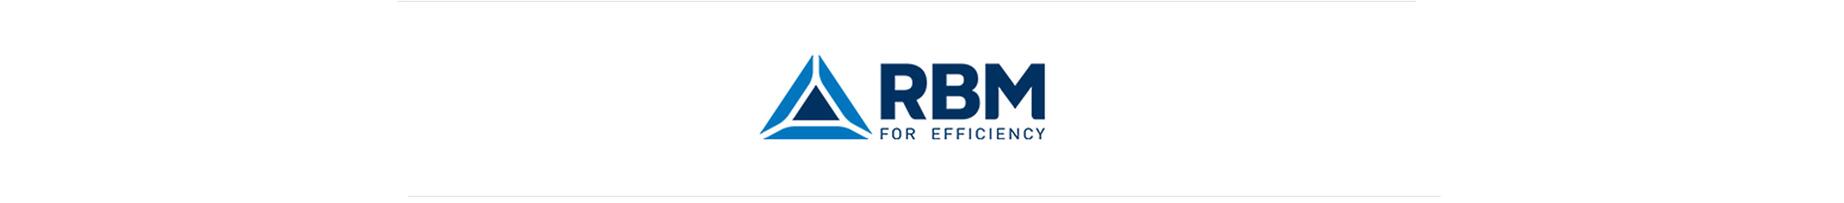 nos-fournisseurs-rbm-logo